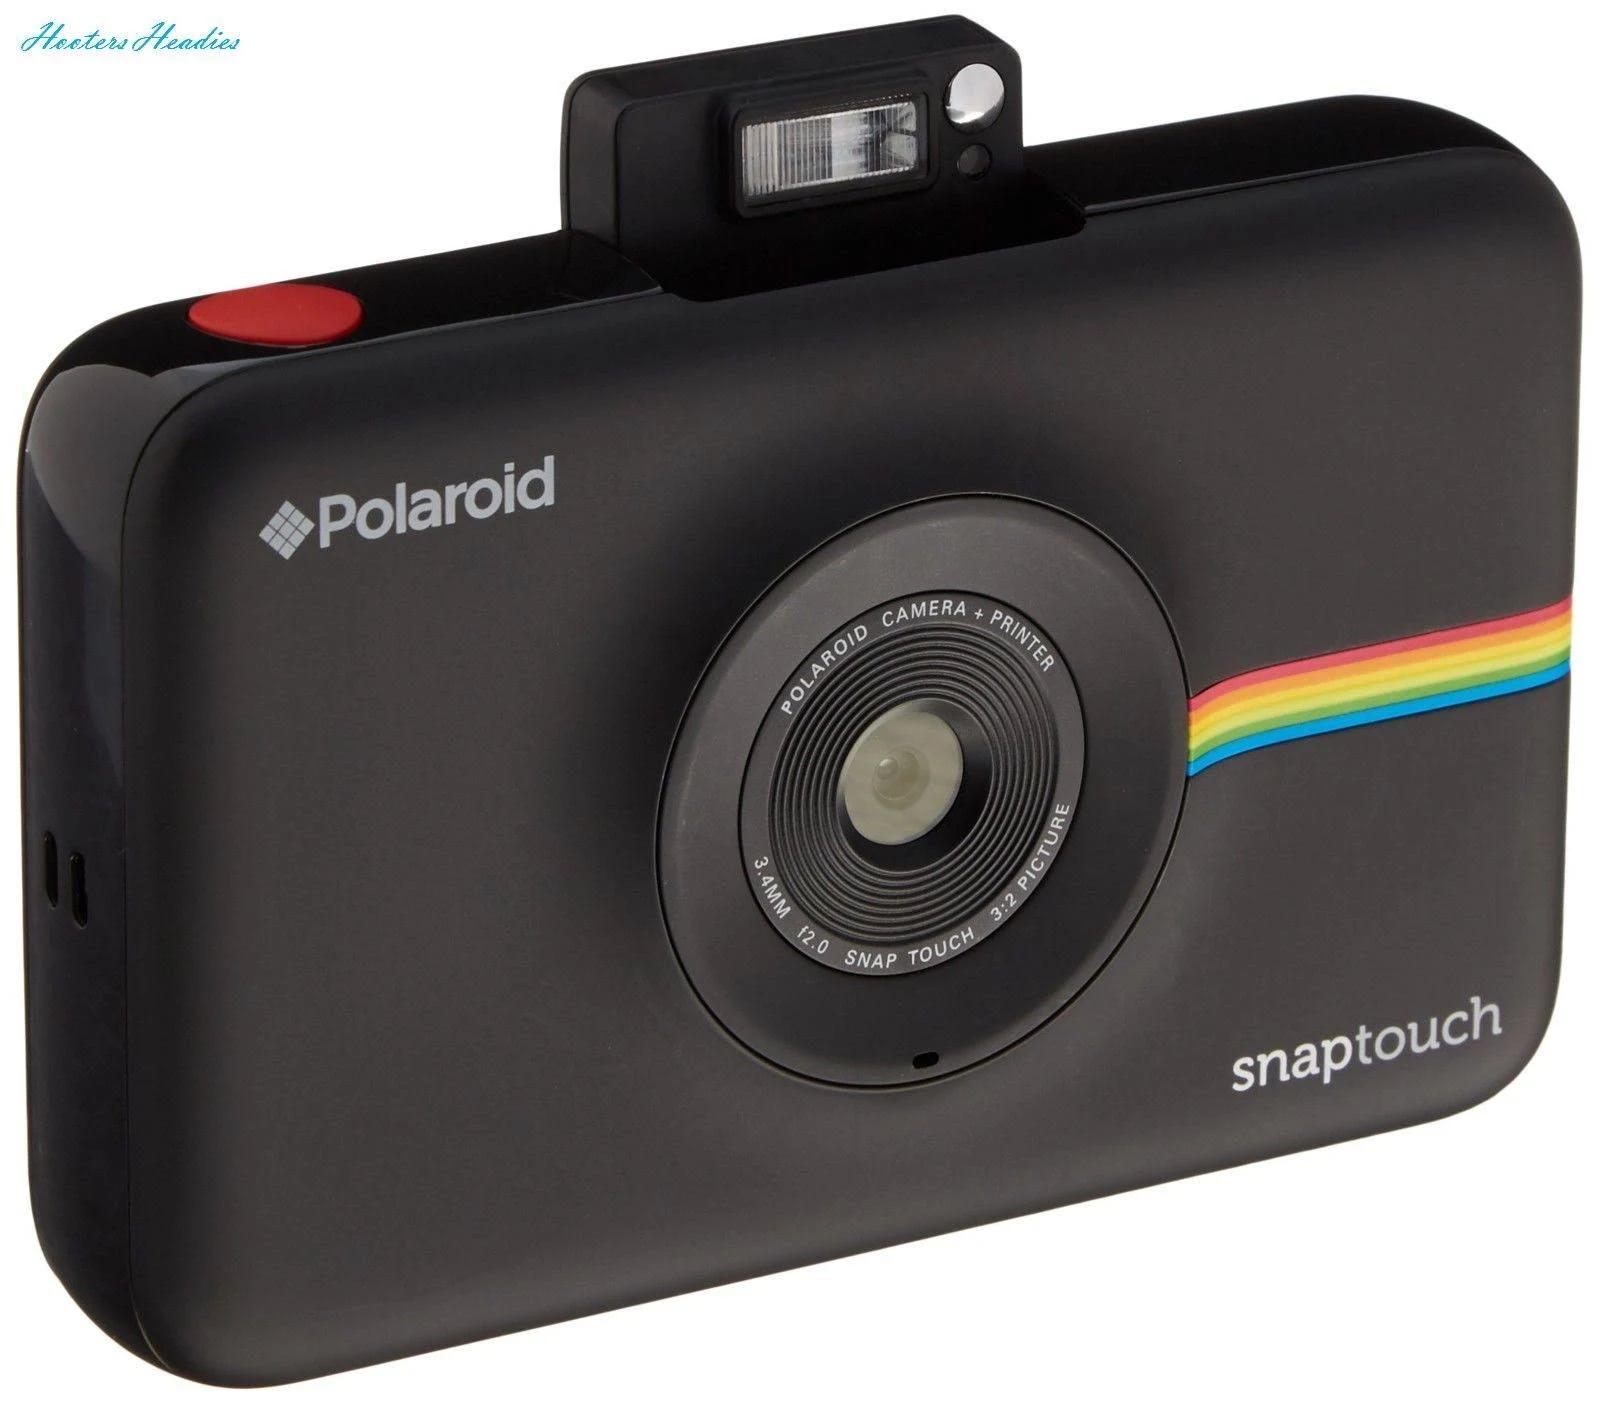 Polaroid Cyfrowy aparat fotograficzny Snap Touch z natychmiastowym drukiem i wyświetlaczem LCD (czarny) z technologią druku Zink Zero Ink